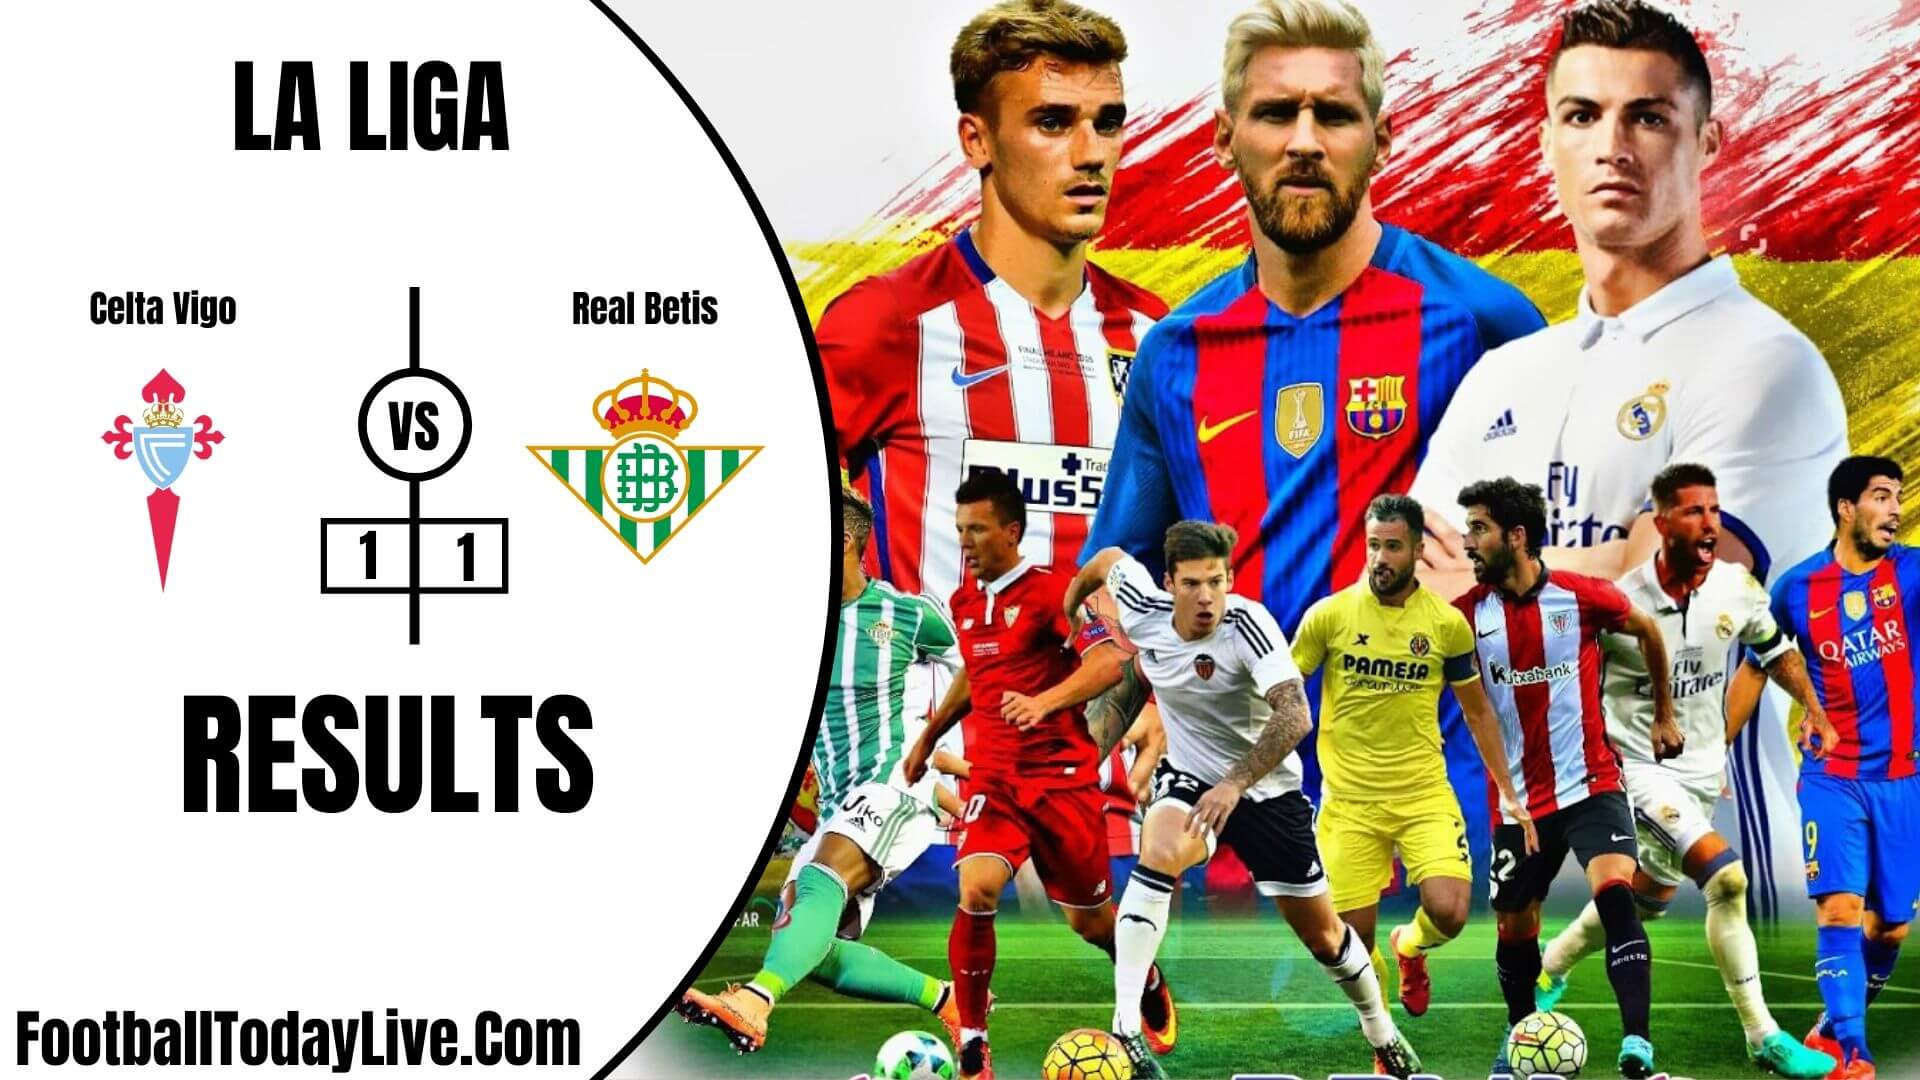 Celta Vigo Vs Real Betis | La Liga Week 34 Result 2020